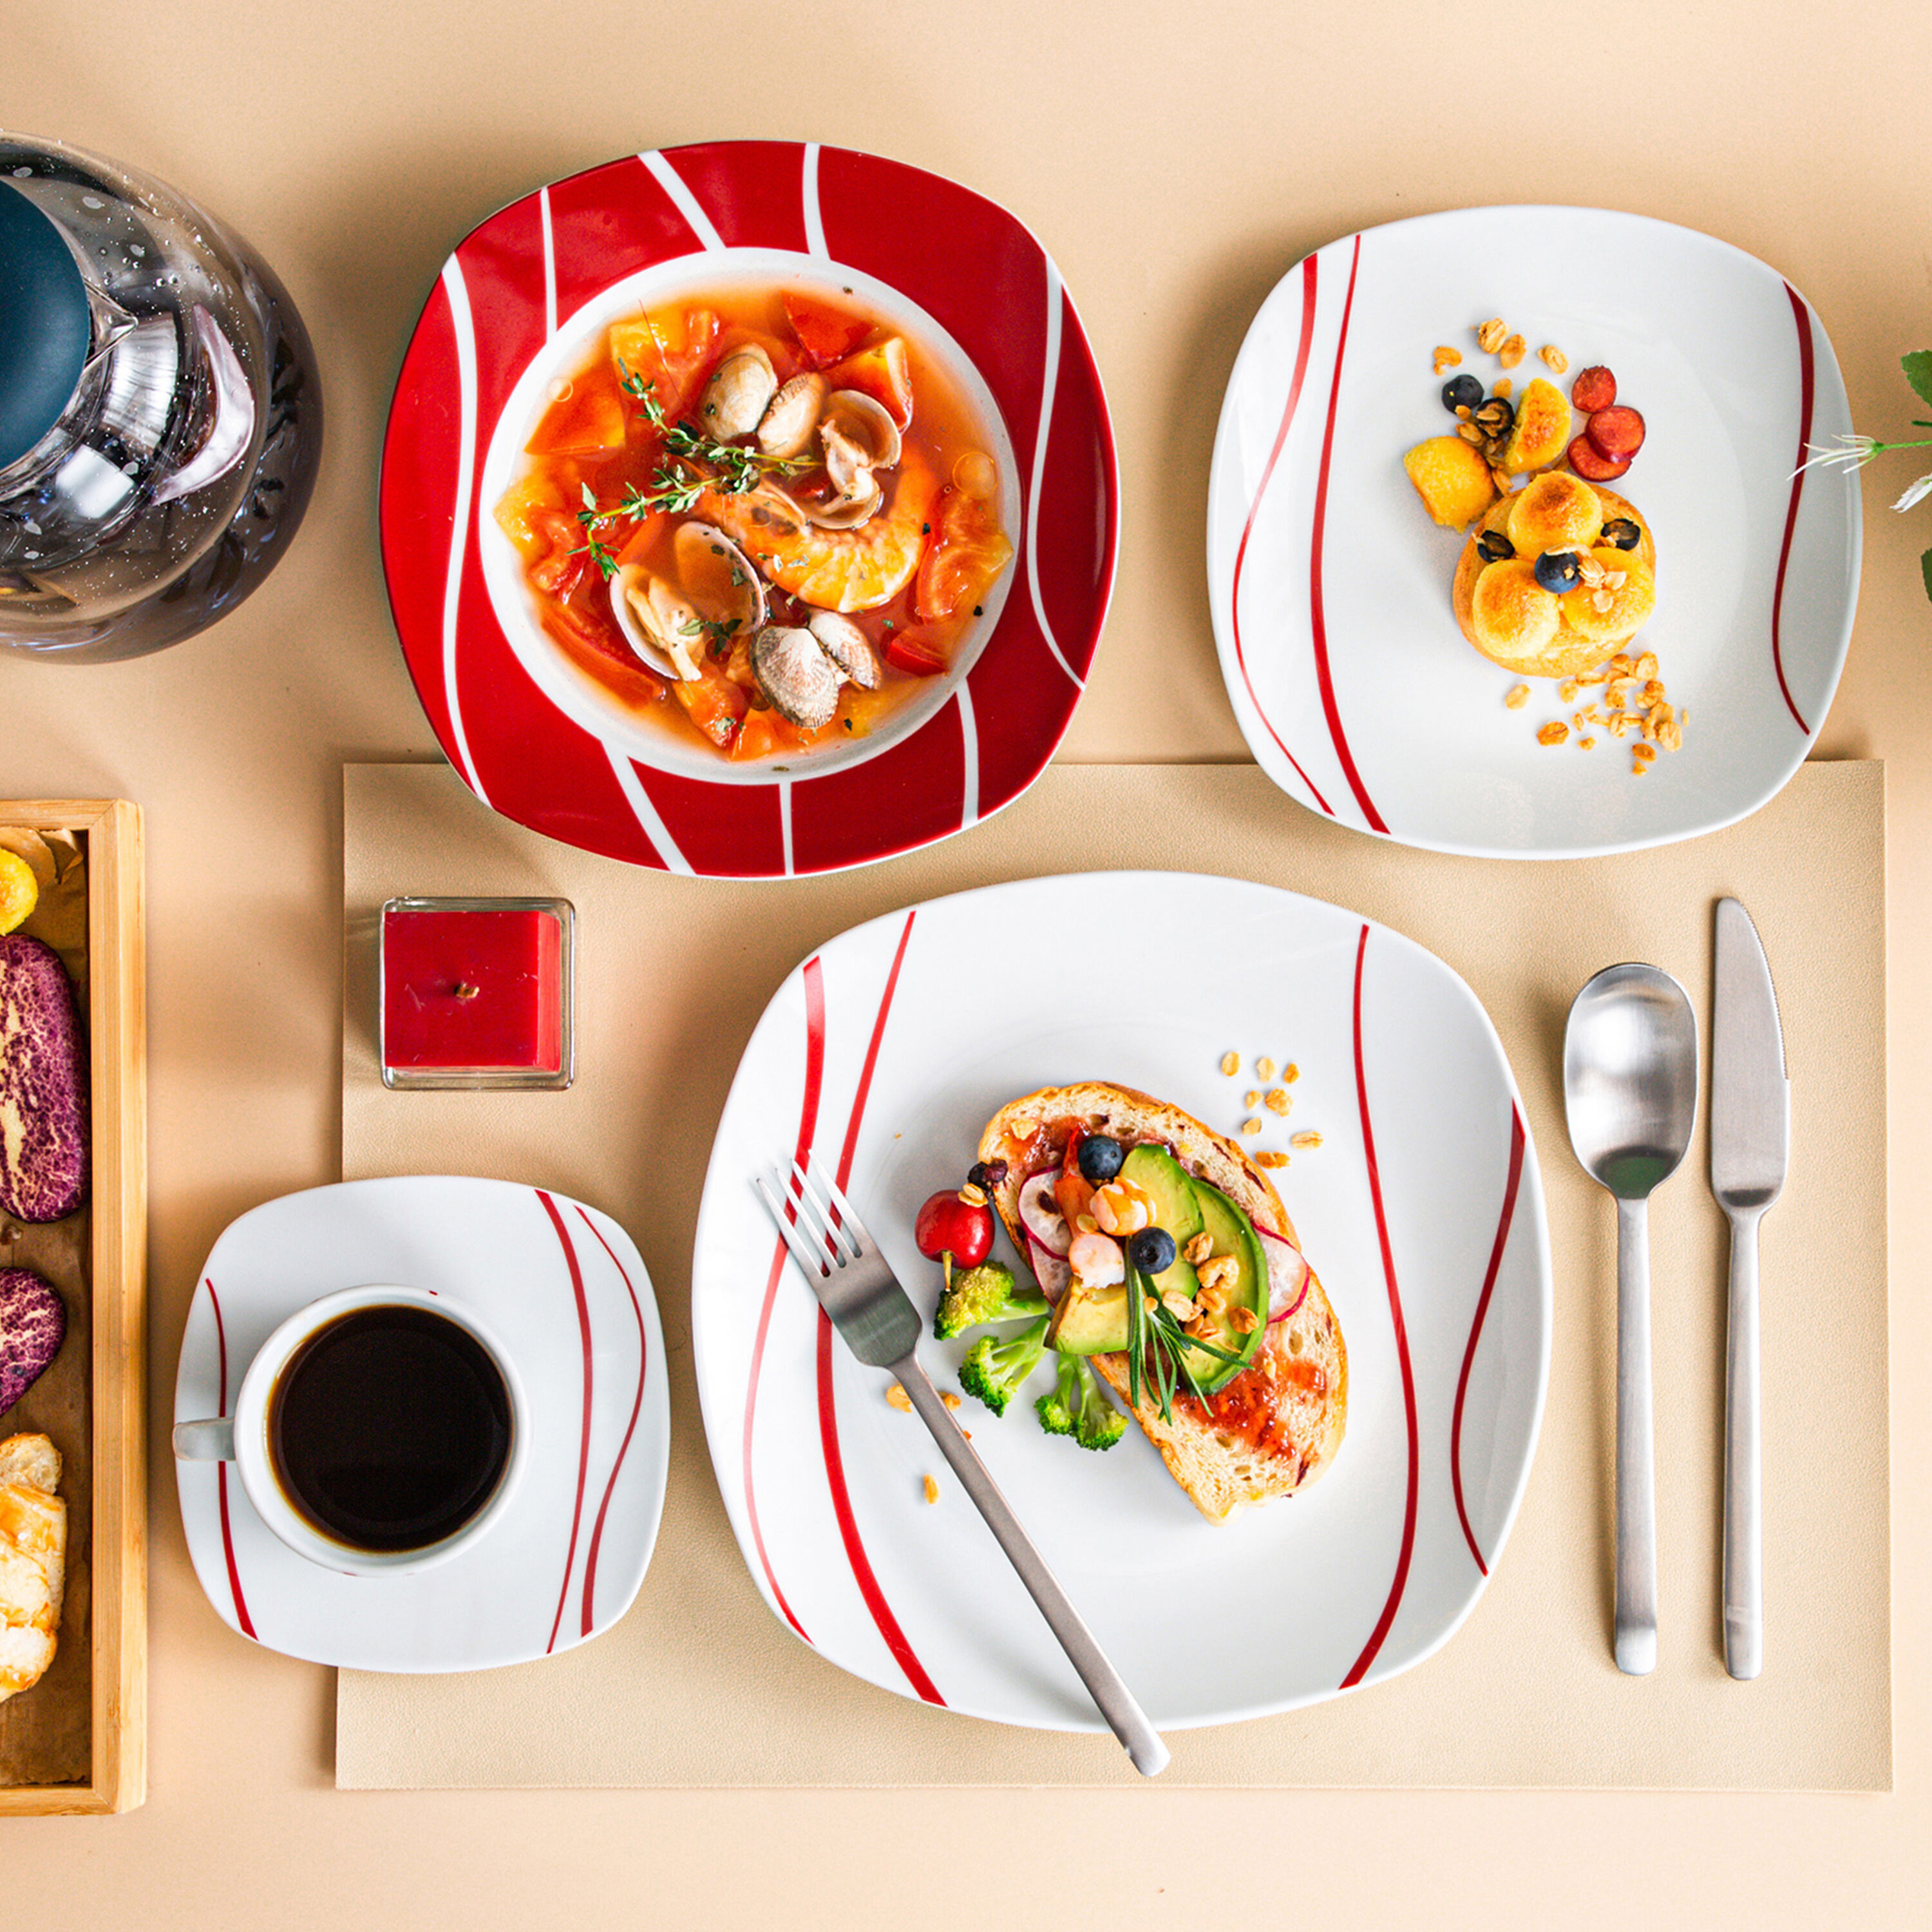 MALACASA Porcelain China Dinnerware Set - Service for 6 & Reviews